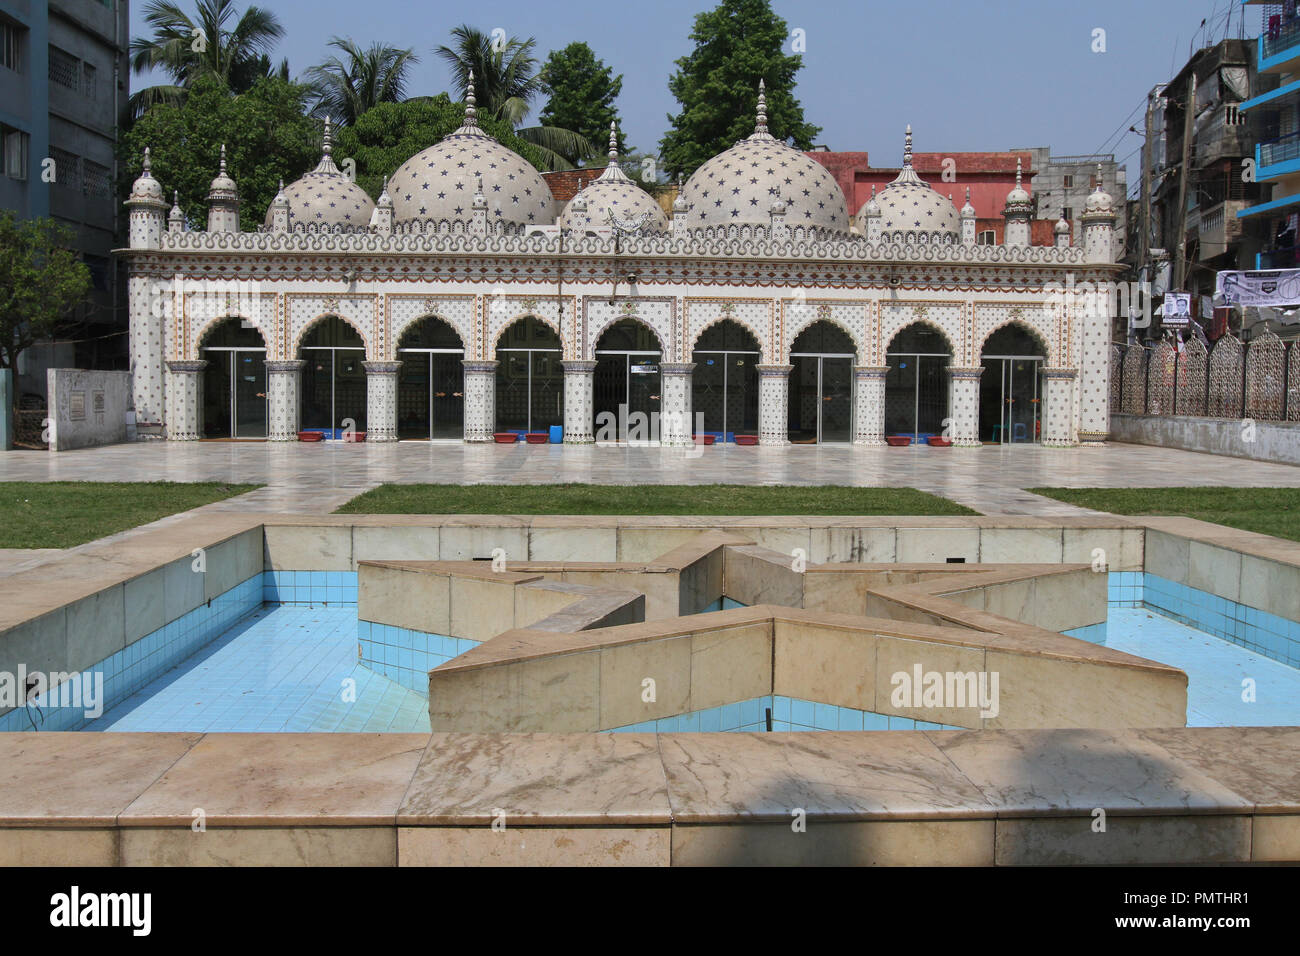 Dacca in Bangladesh - Aprile 18, 2015: Moschea Star (Tara Masjid), è una moschea a Armanitola a Dhaka, nel Bangladesh. La moschea ha ornato progetta ed è de Foto Stock